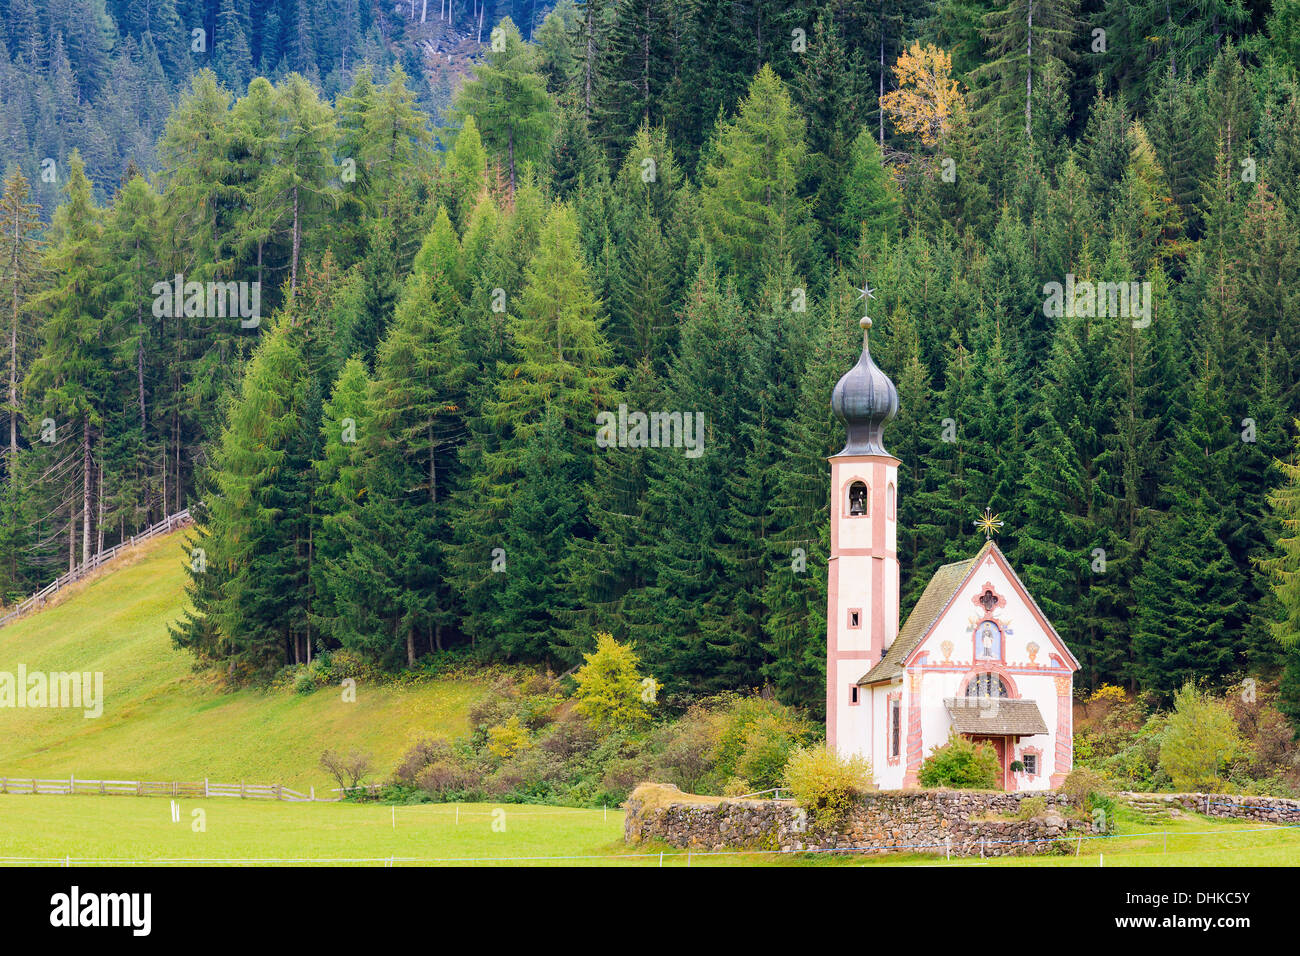 Johann (San Giovanni in italiano) cappella in Val di Funes nelle Dolomiti in Italia settentrionale Foto Stock